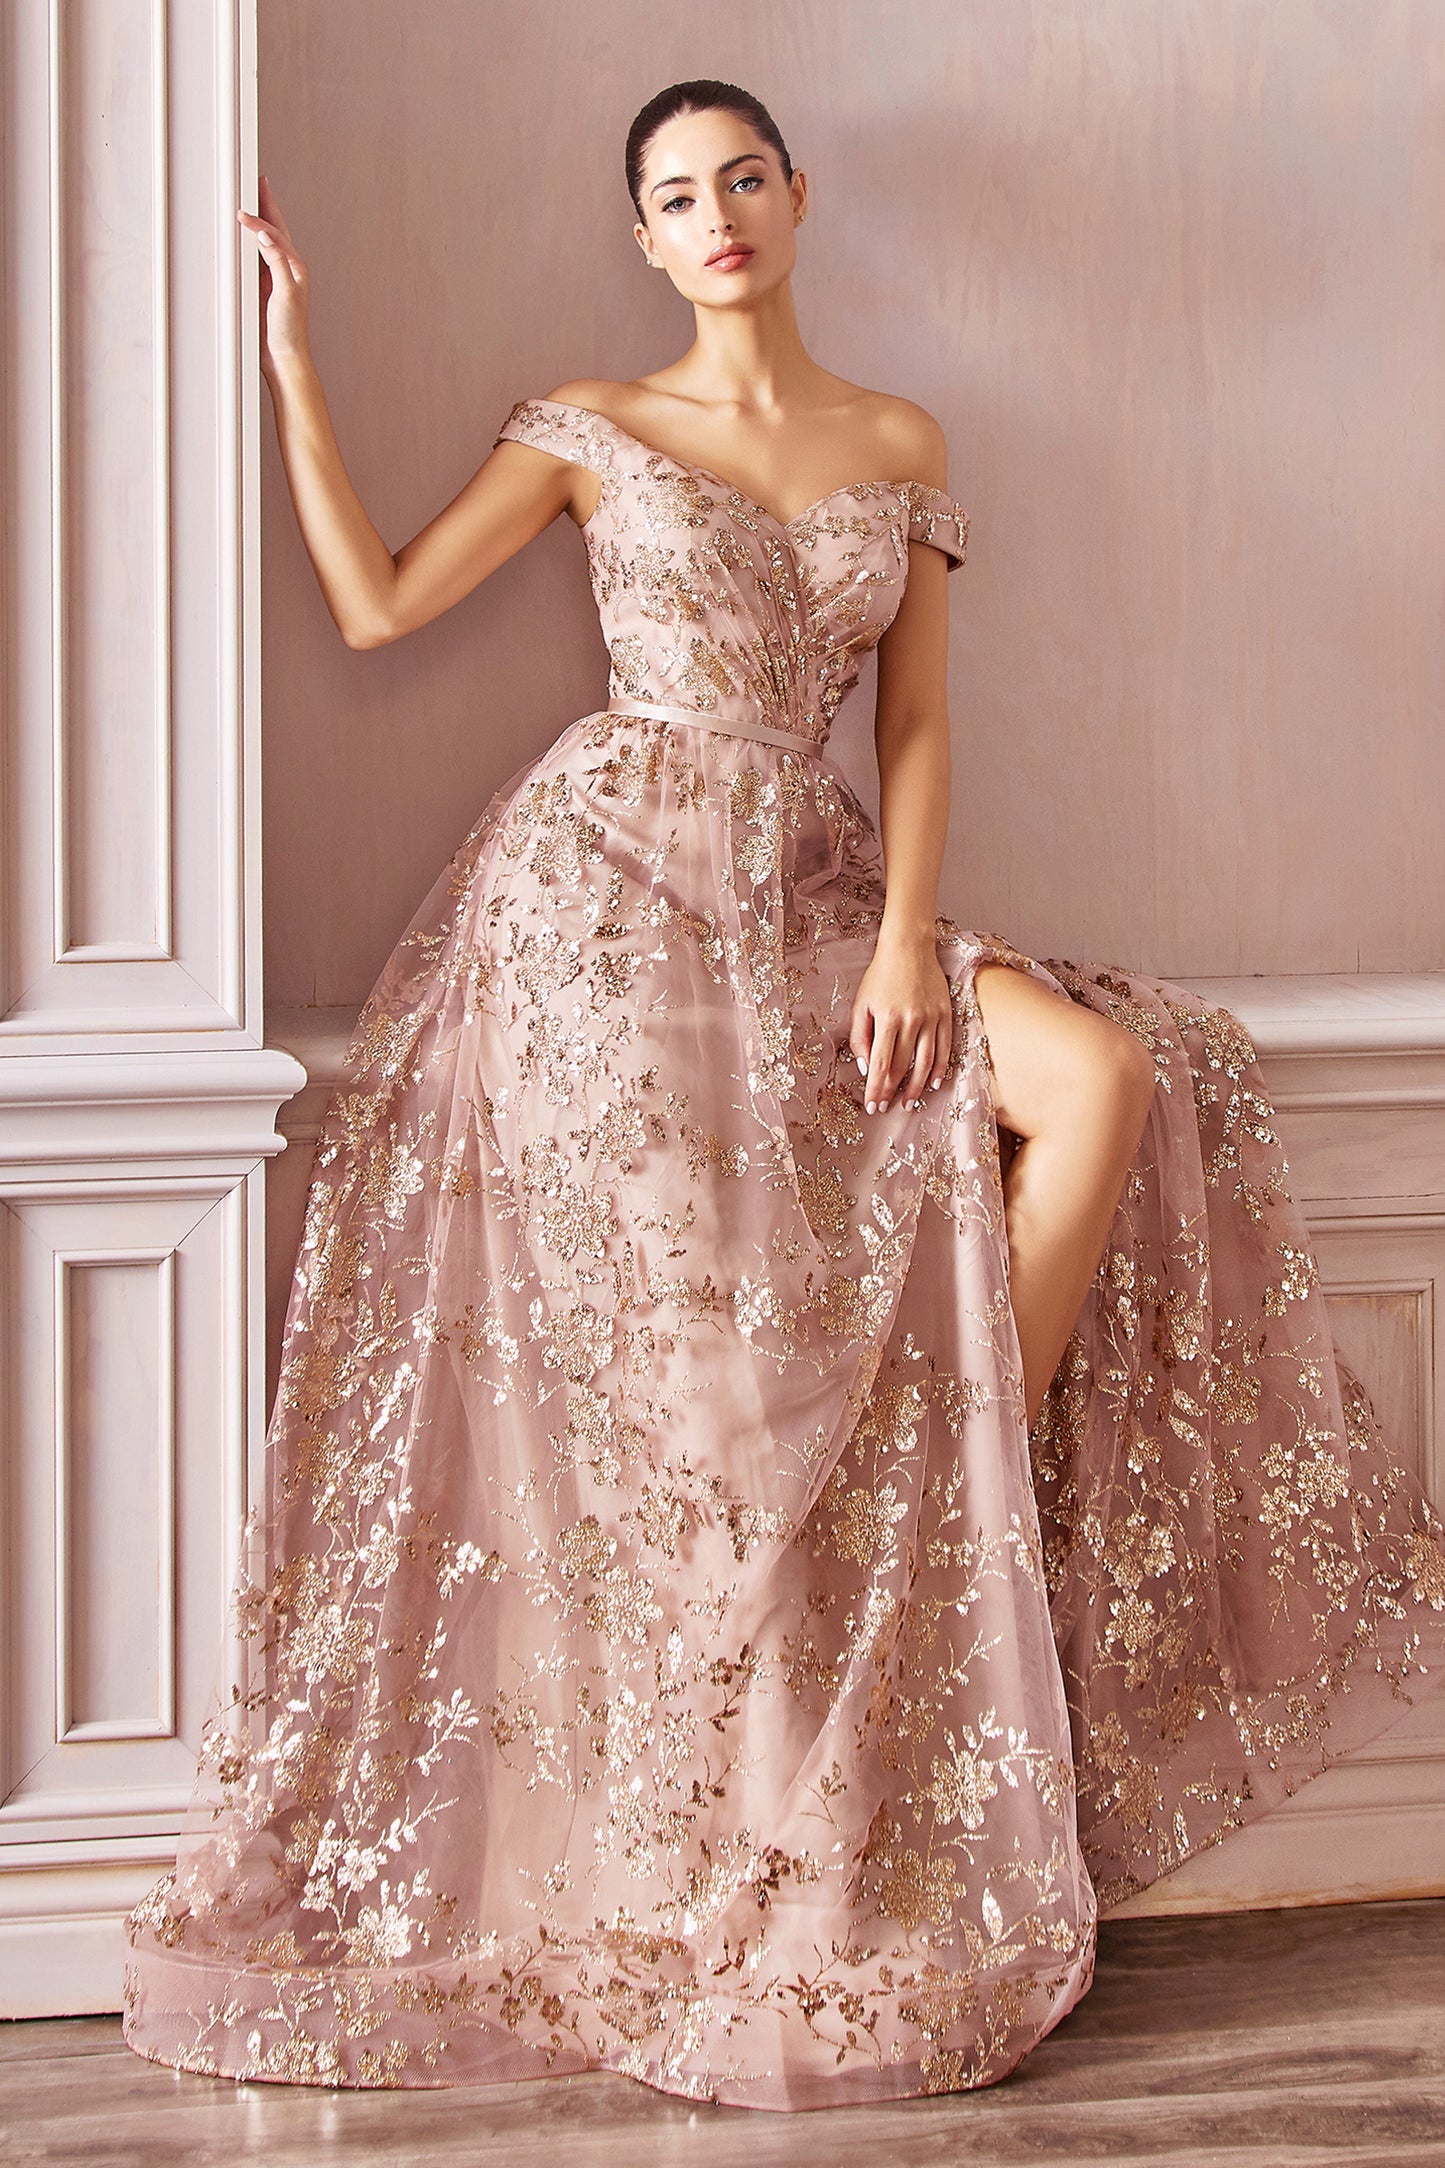 Fugtig tub tyran Askepot Divine CB069 A-line kjole med udsmykket print - særlige lejligheder  - Ariststyles